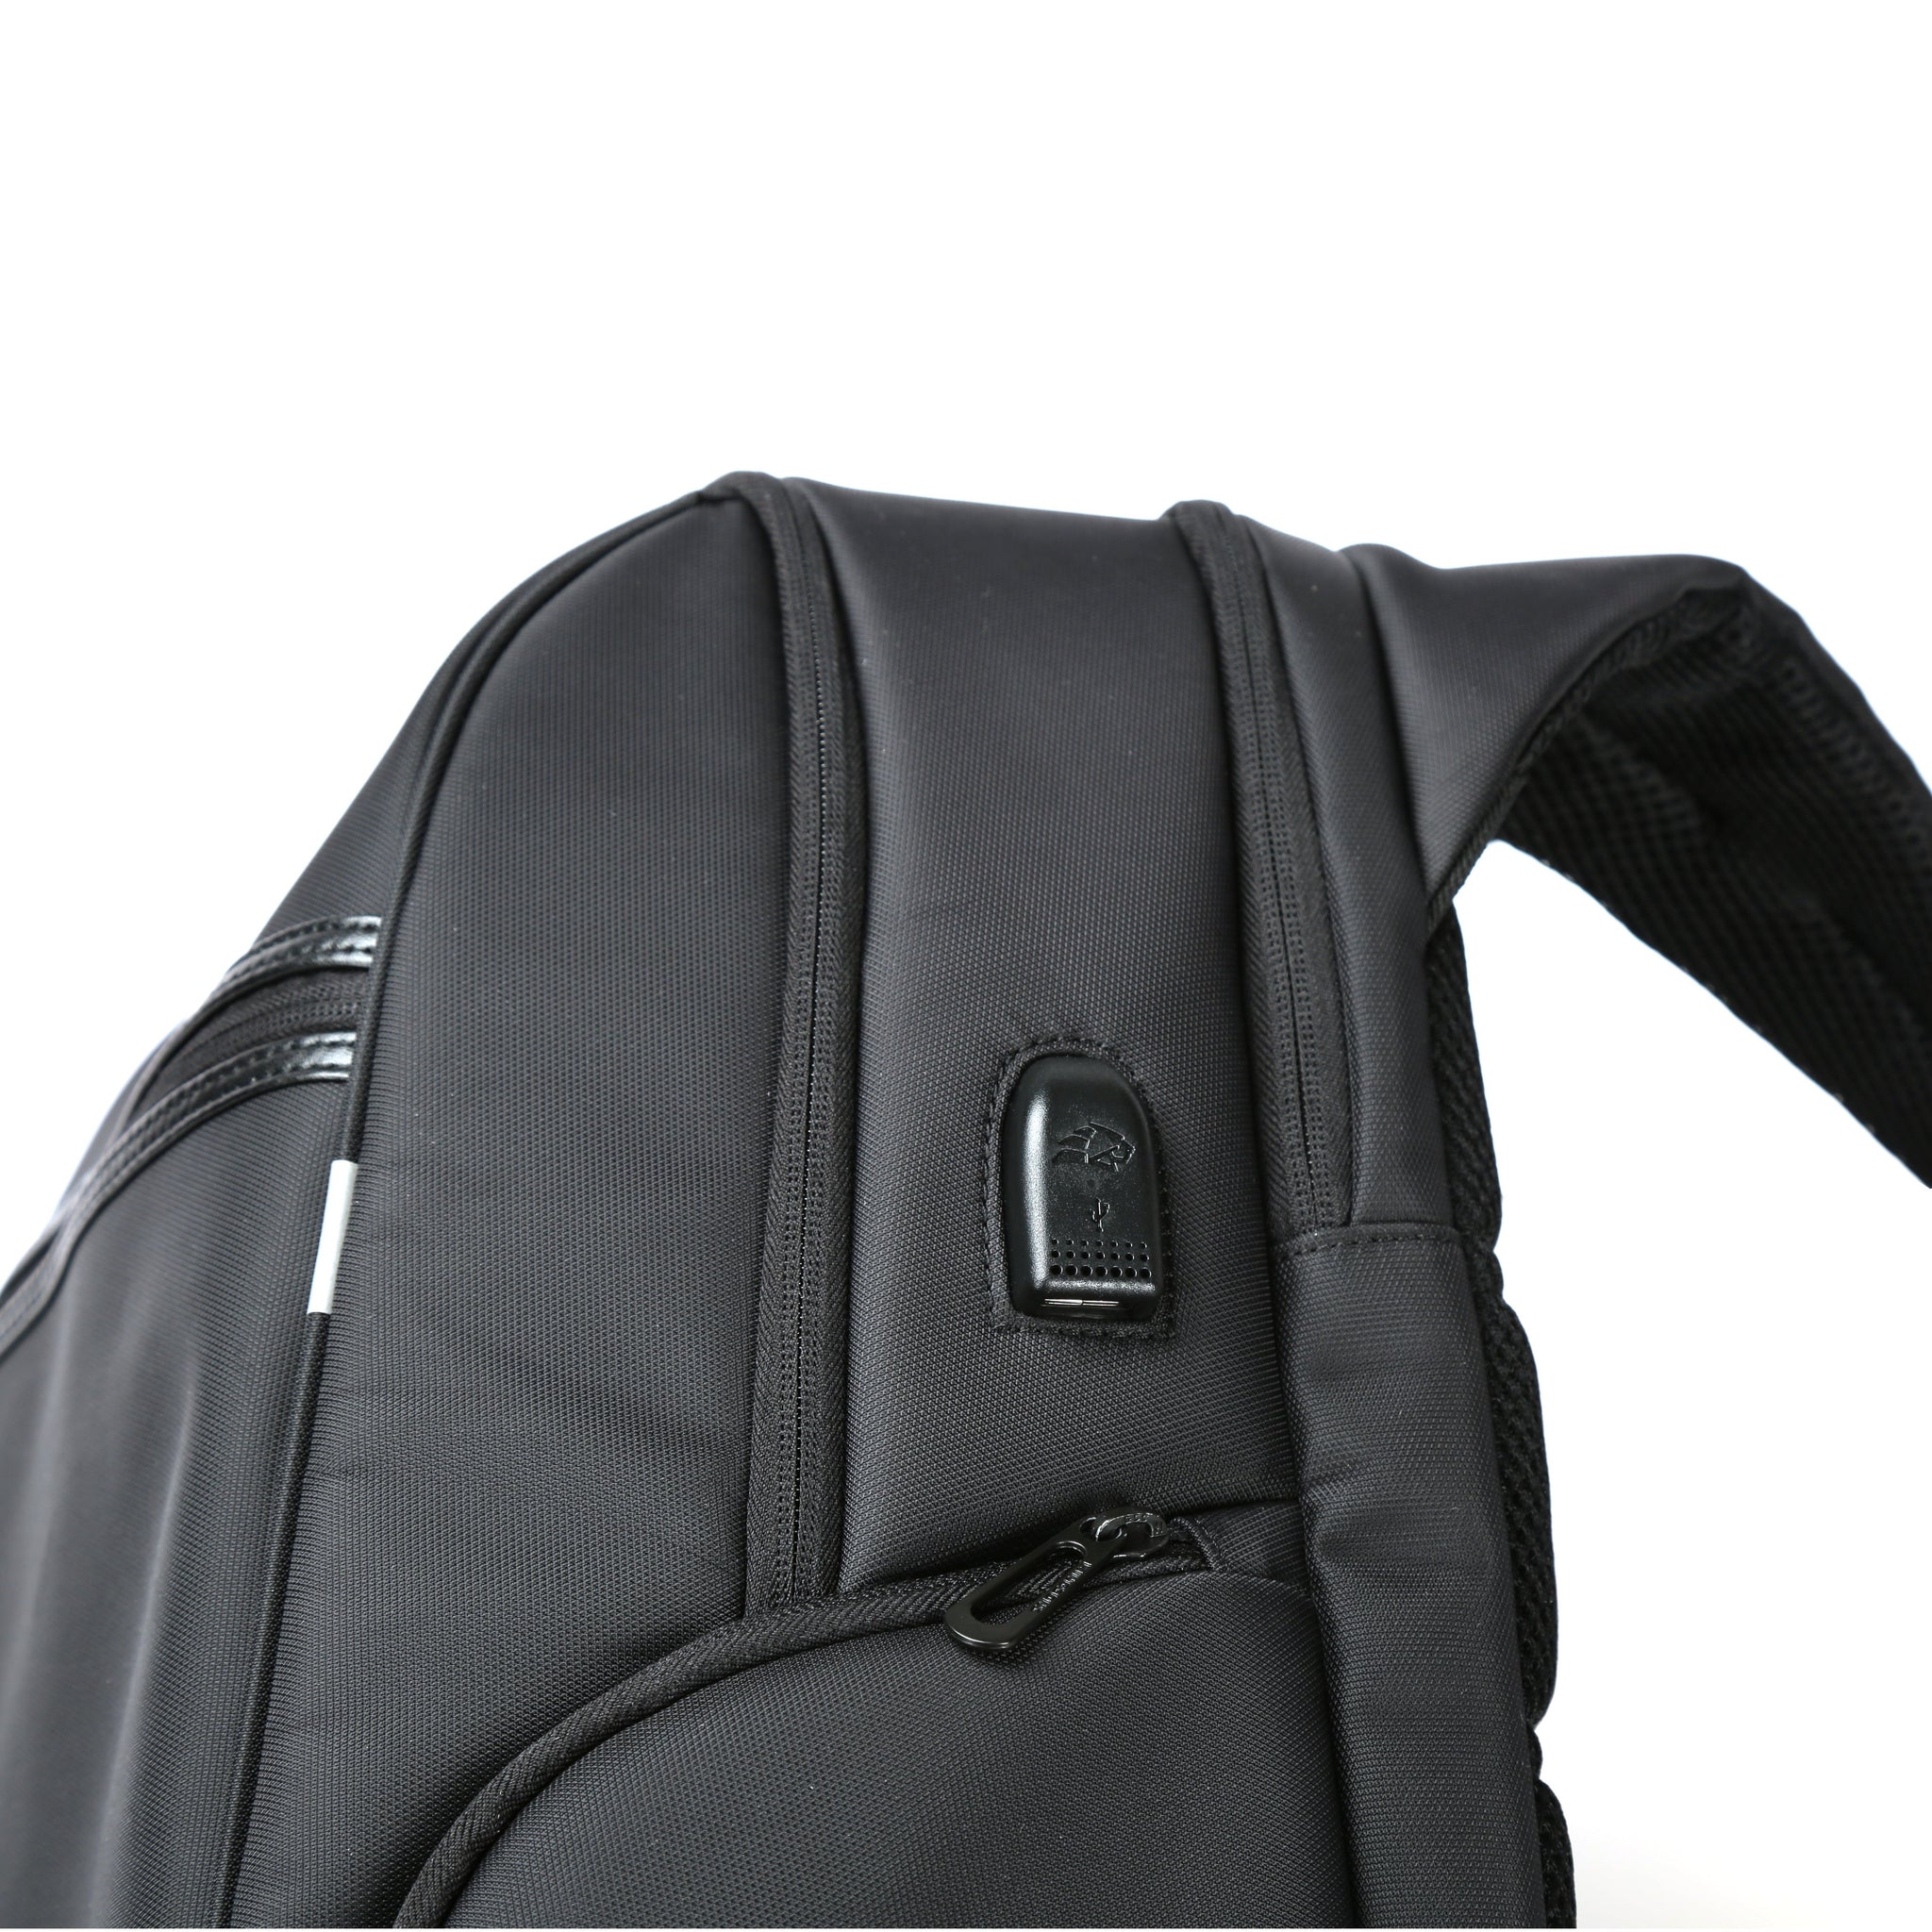 Slim Laptop Backpack Anti Vol - Sac à dos idée  cadeau homme, cadeau anniversaire, cadeau original homme